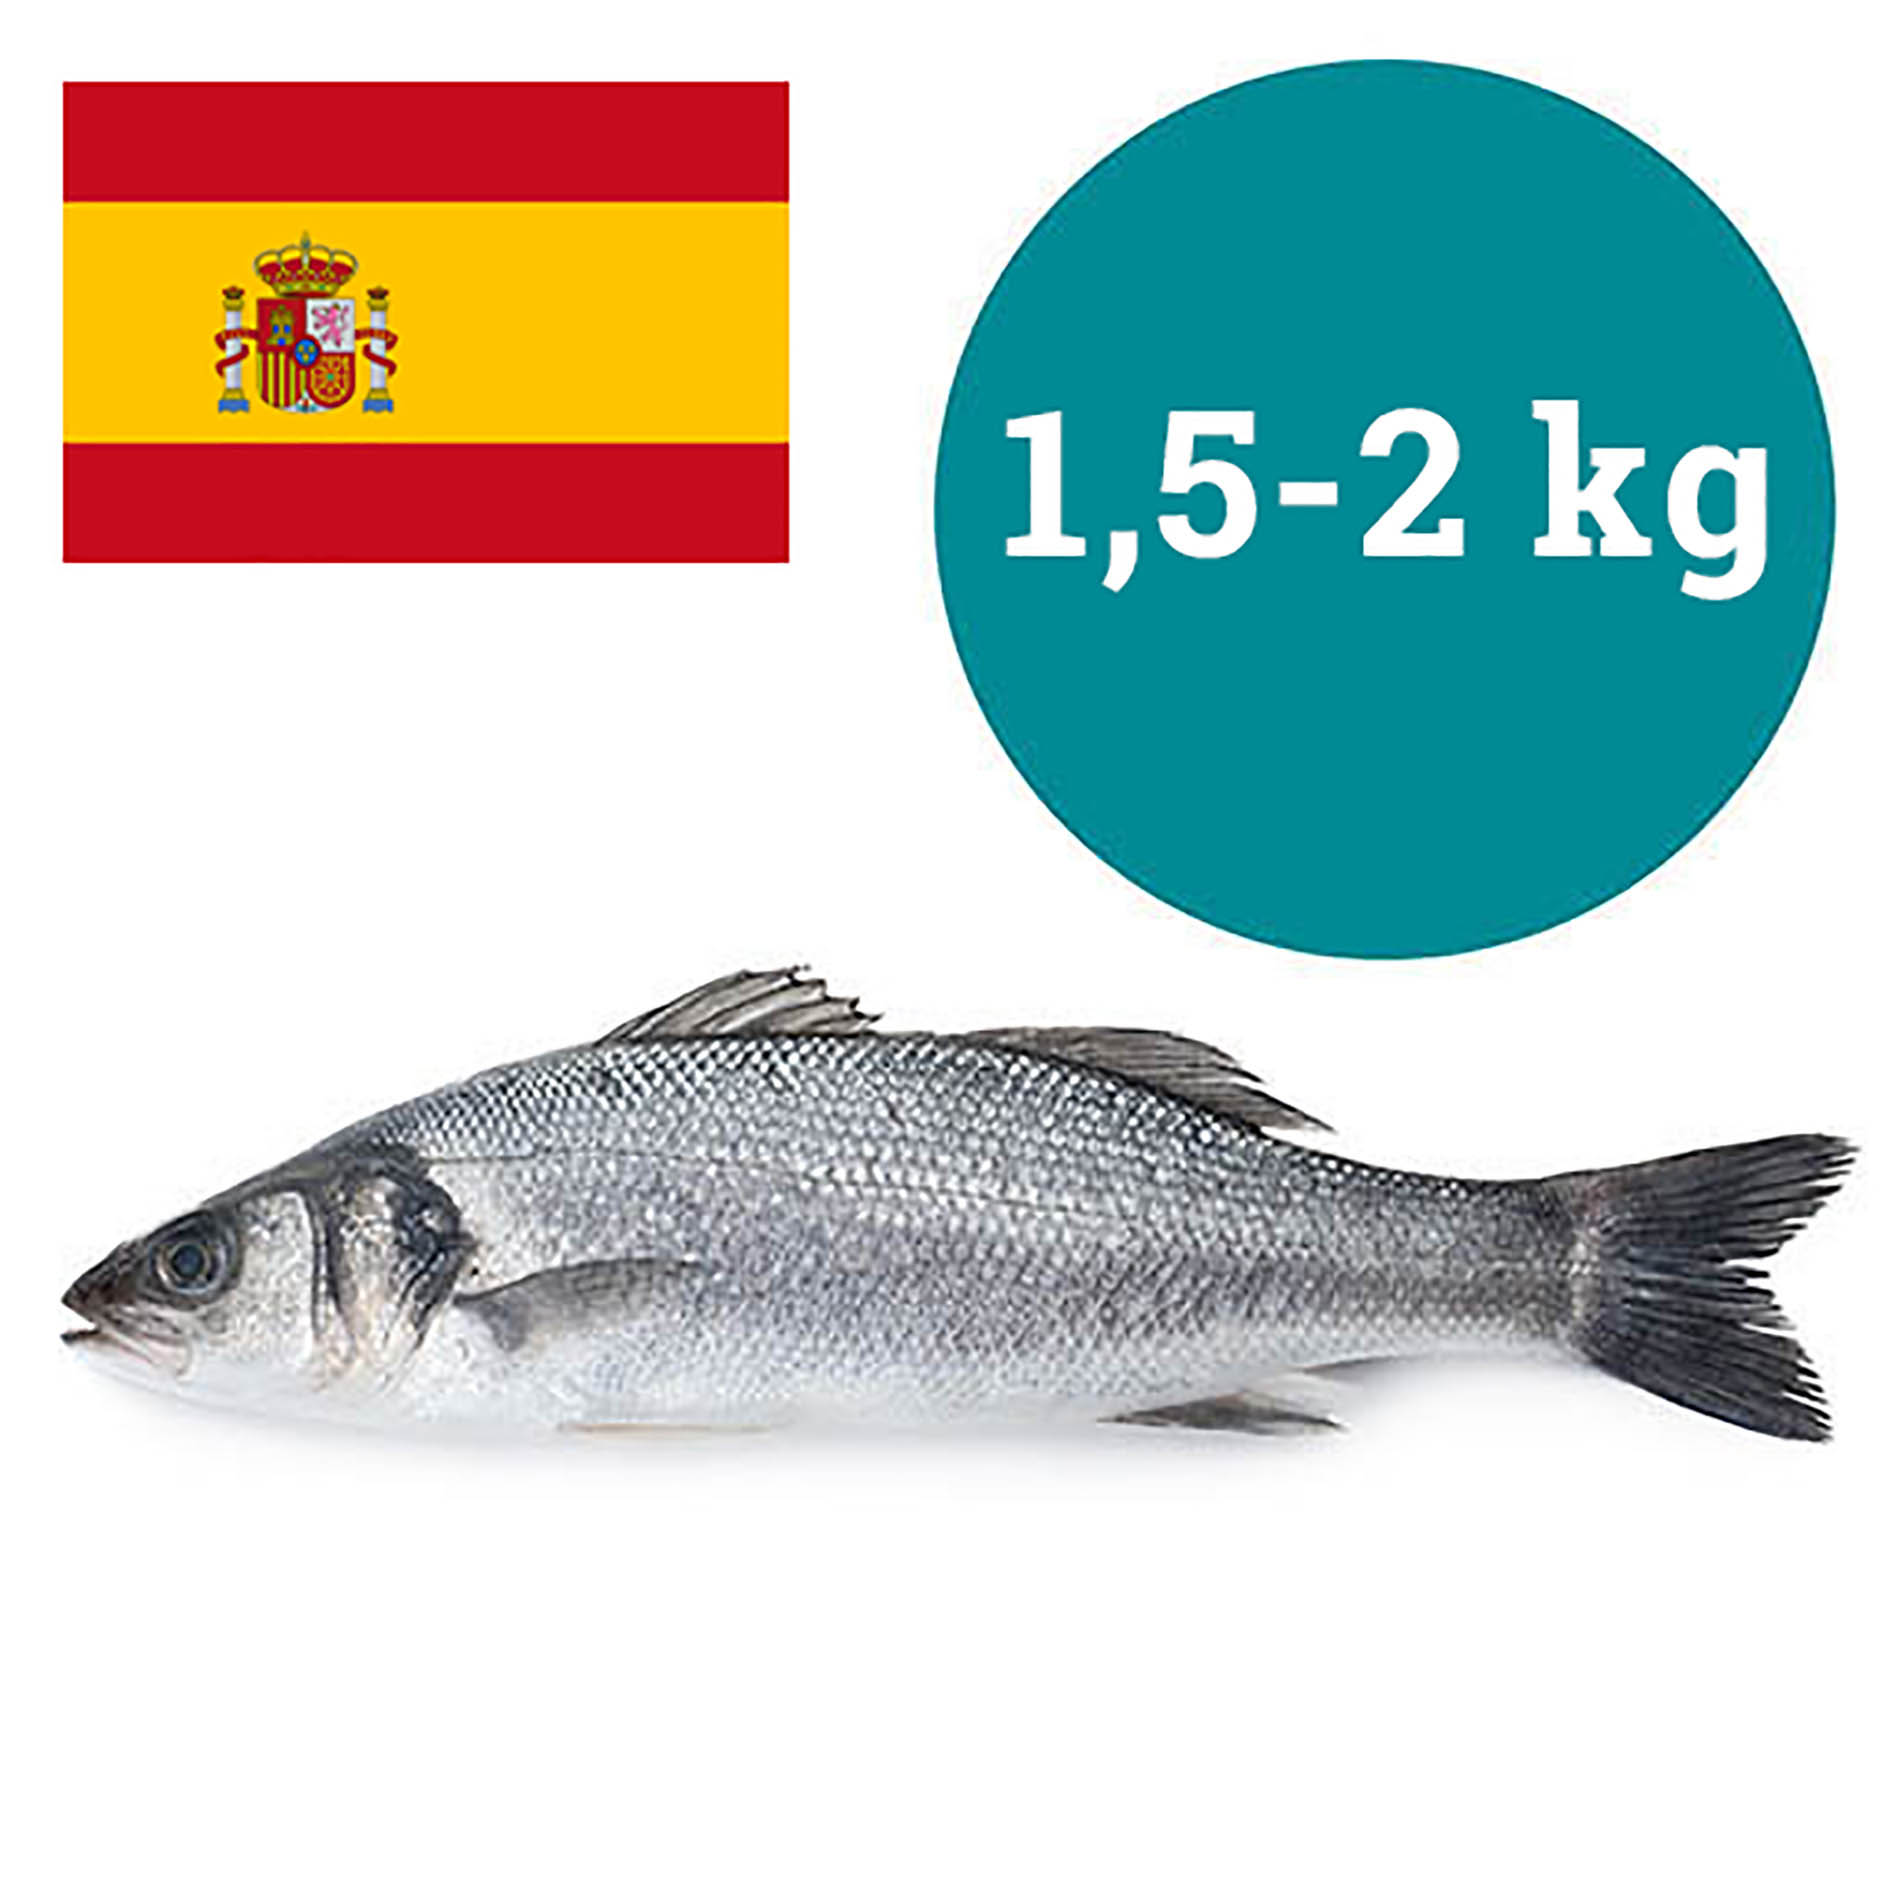 WOLFSBARSCH 1,5-2kg SPANIEN GEZÜCHTET